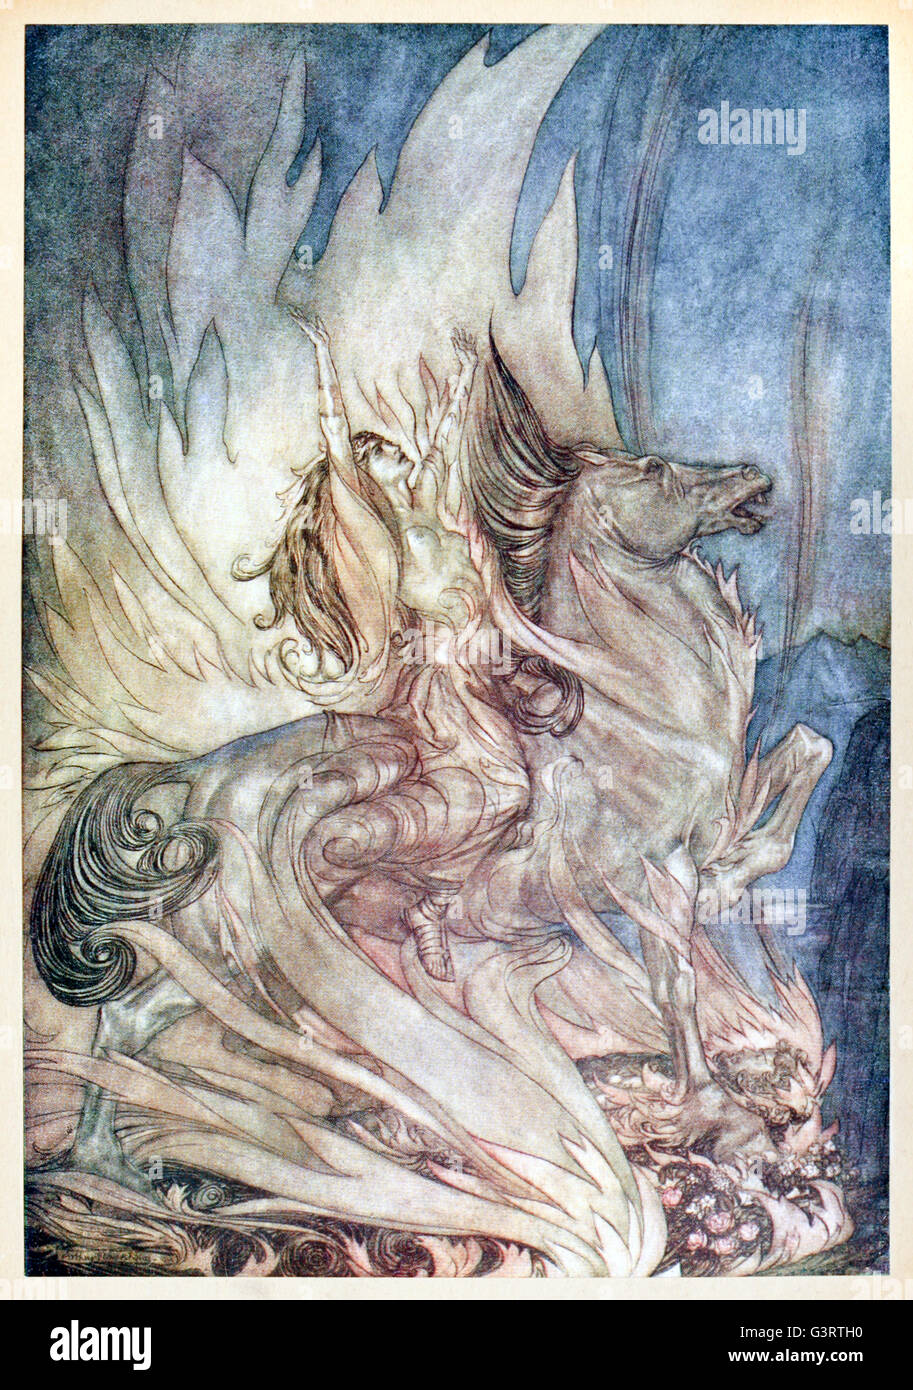 "Brunnhilde su Grane salta alla pira funeraria di Siegfried" da 'Siegfried & Il crepuscolo degli dei' illustrato da Arthur Rackham (1867-1939). Vedere la descrizione per maggiori informazioni. Foto Stock